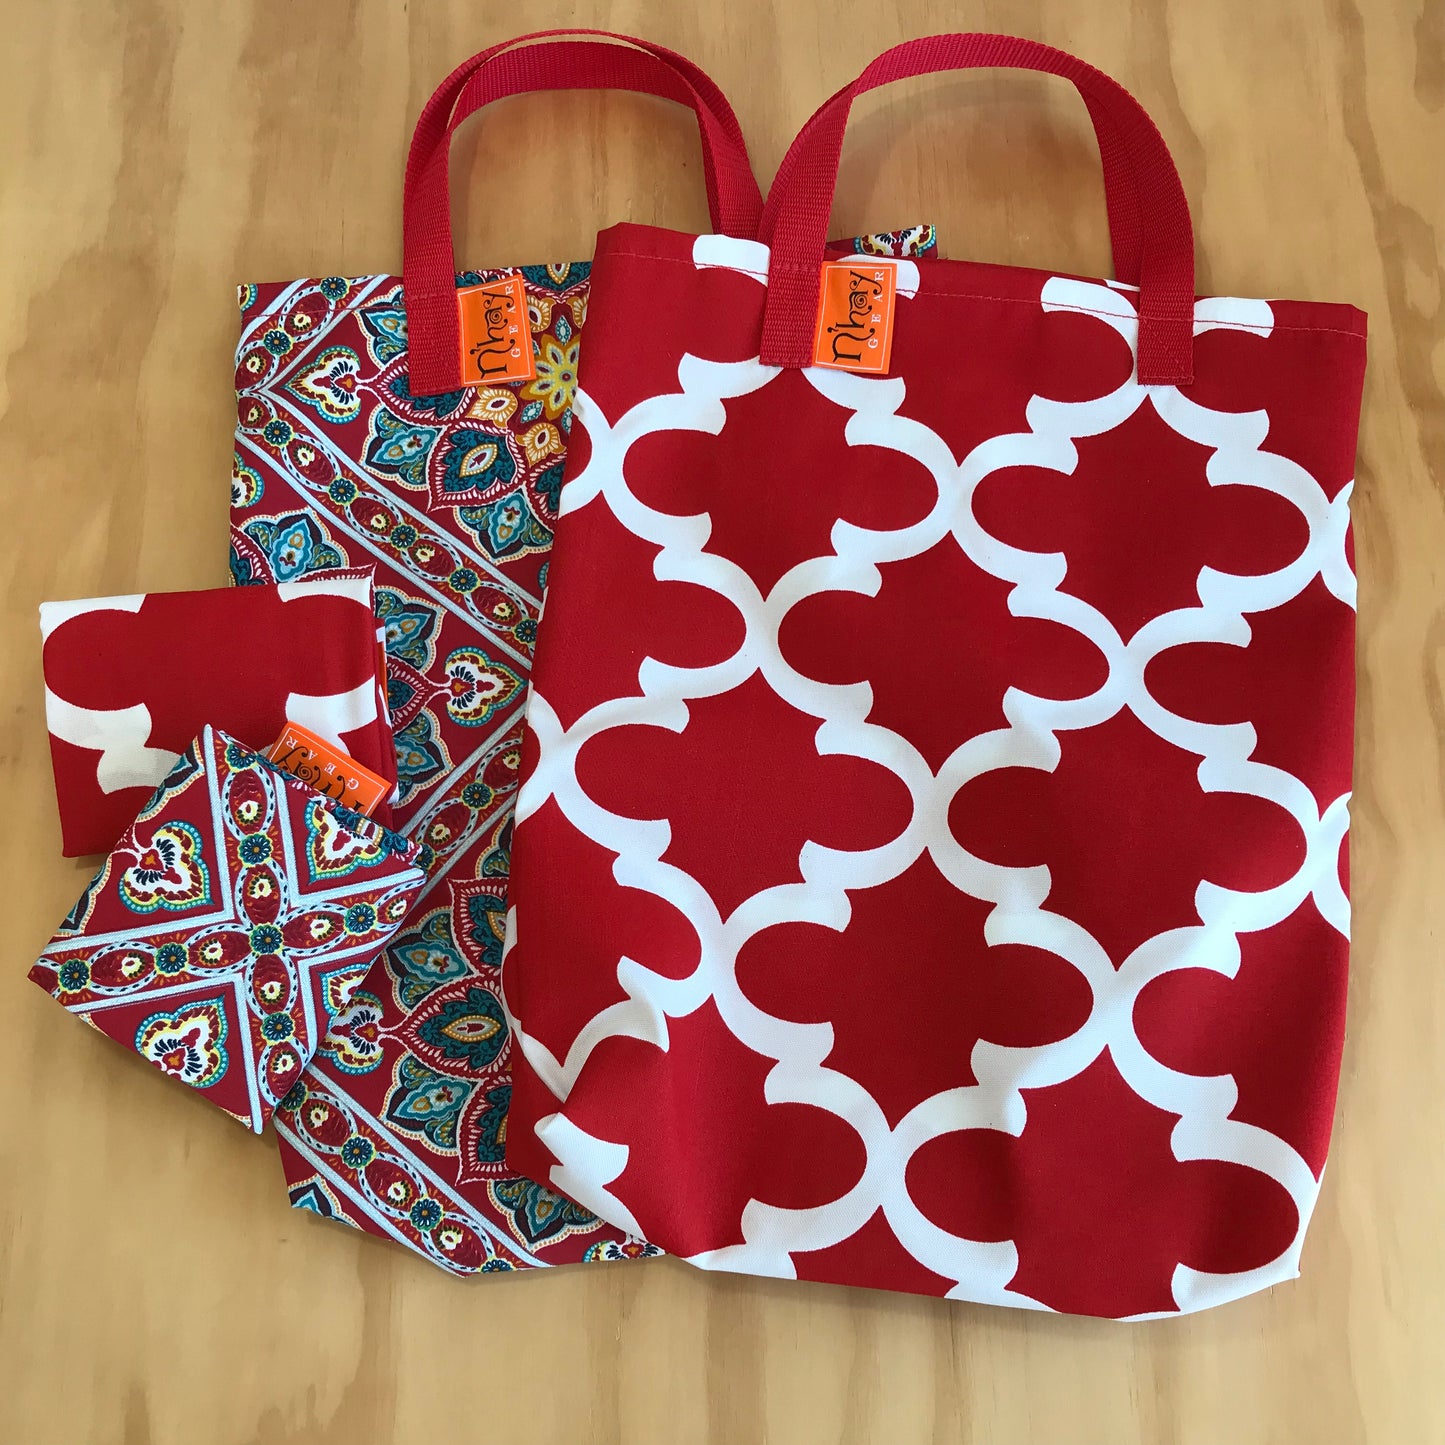 N'hay Shopper Bags - Packs to go